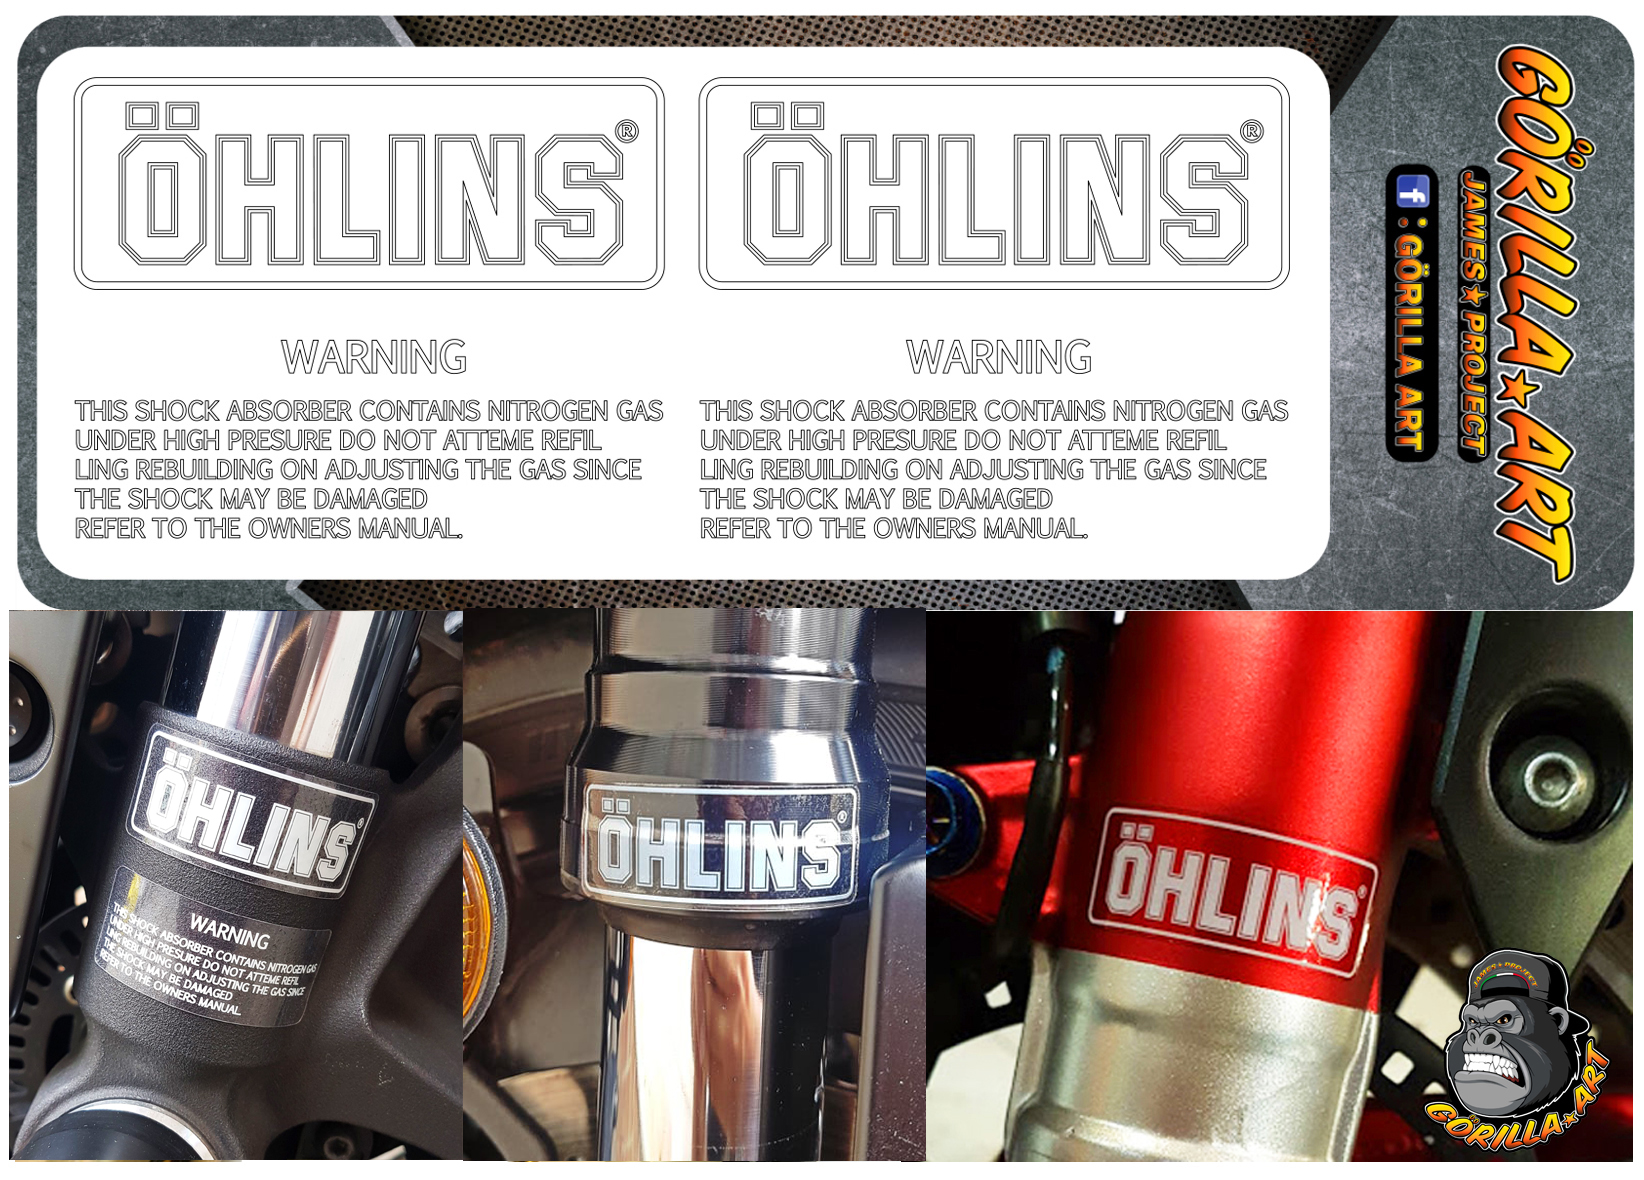 สติ๊กเกอร์ติด โช๊ค Ohlins v-2 Sticker เกรดพรีเมี่ยม  / Motorcycle Sticker shock absorber Ohlins